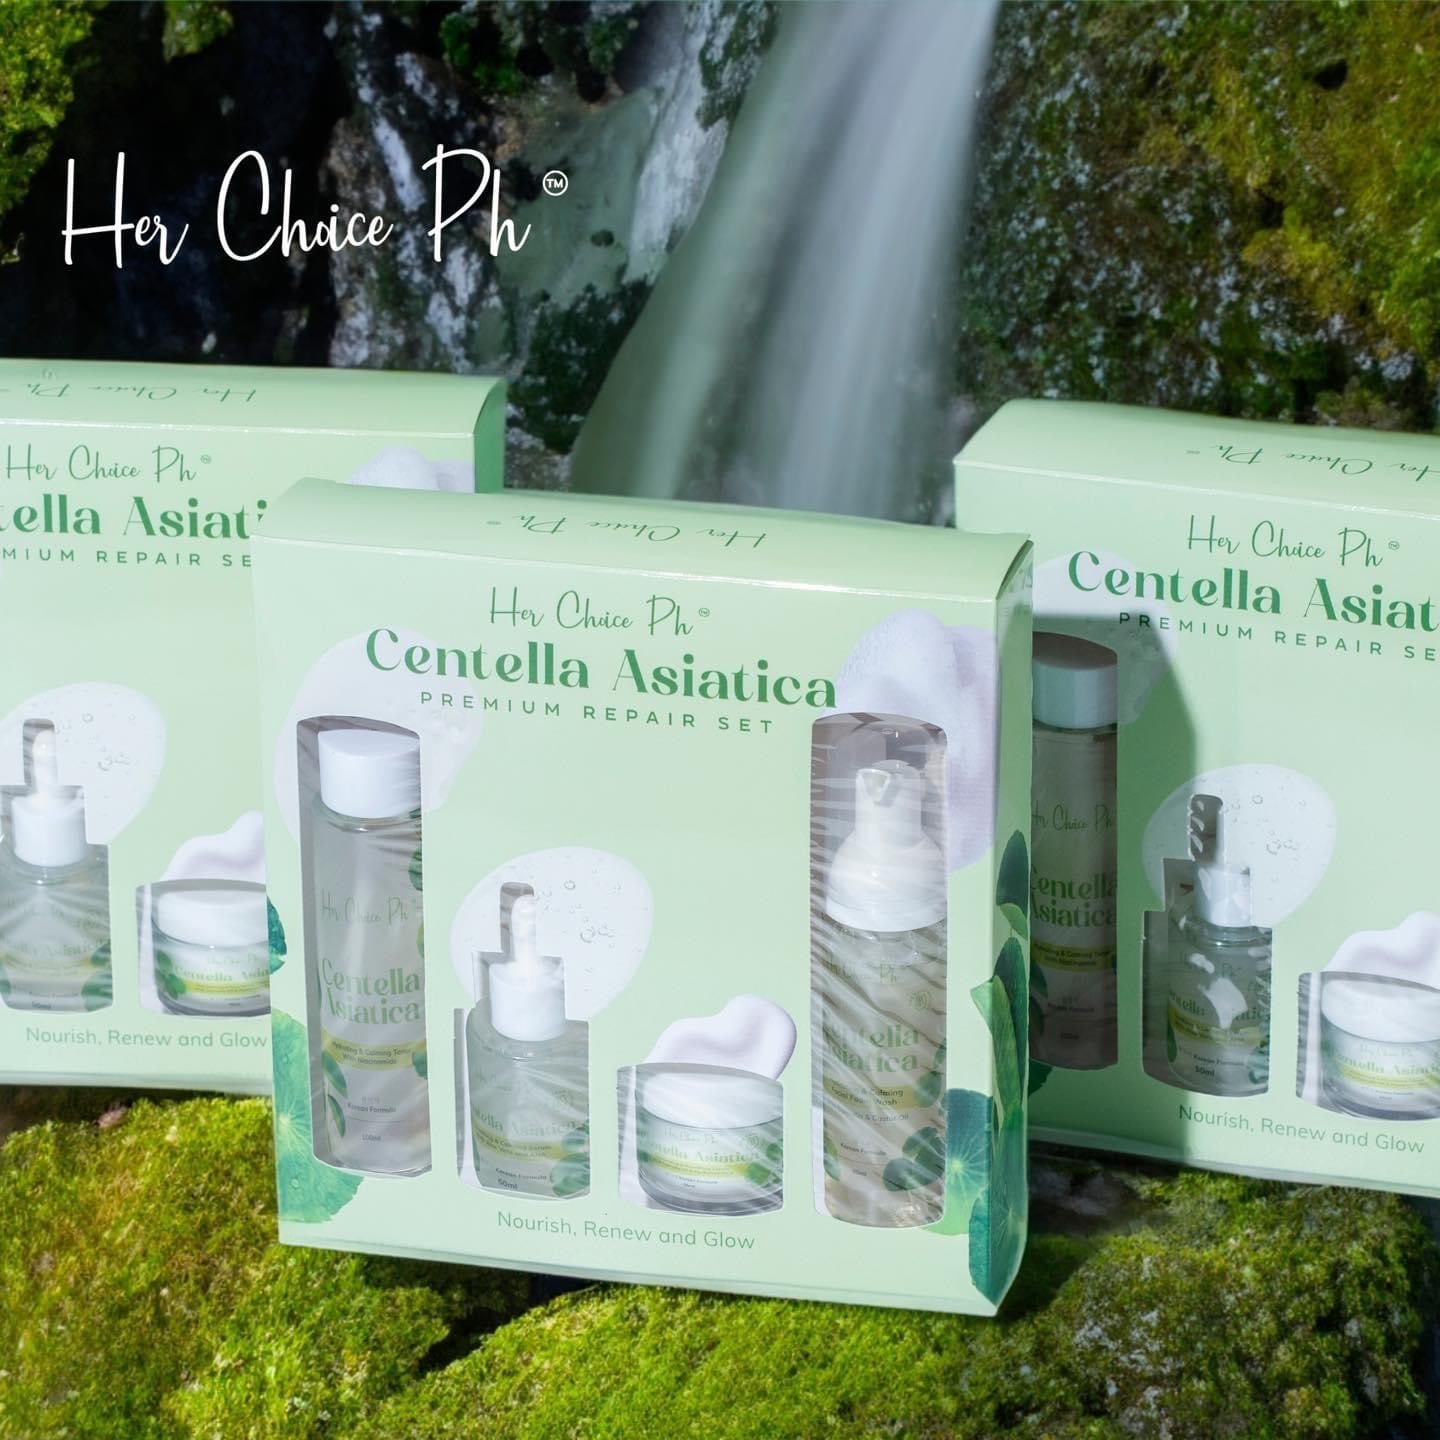 Her Choice Ph Centella Asiatica Skin Care Set - True Beauty Skin Essentials